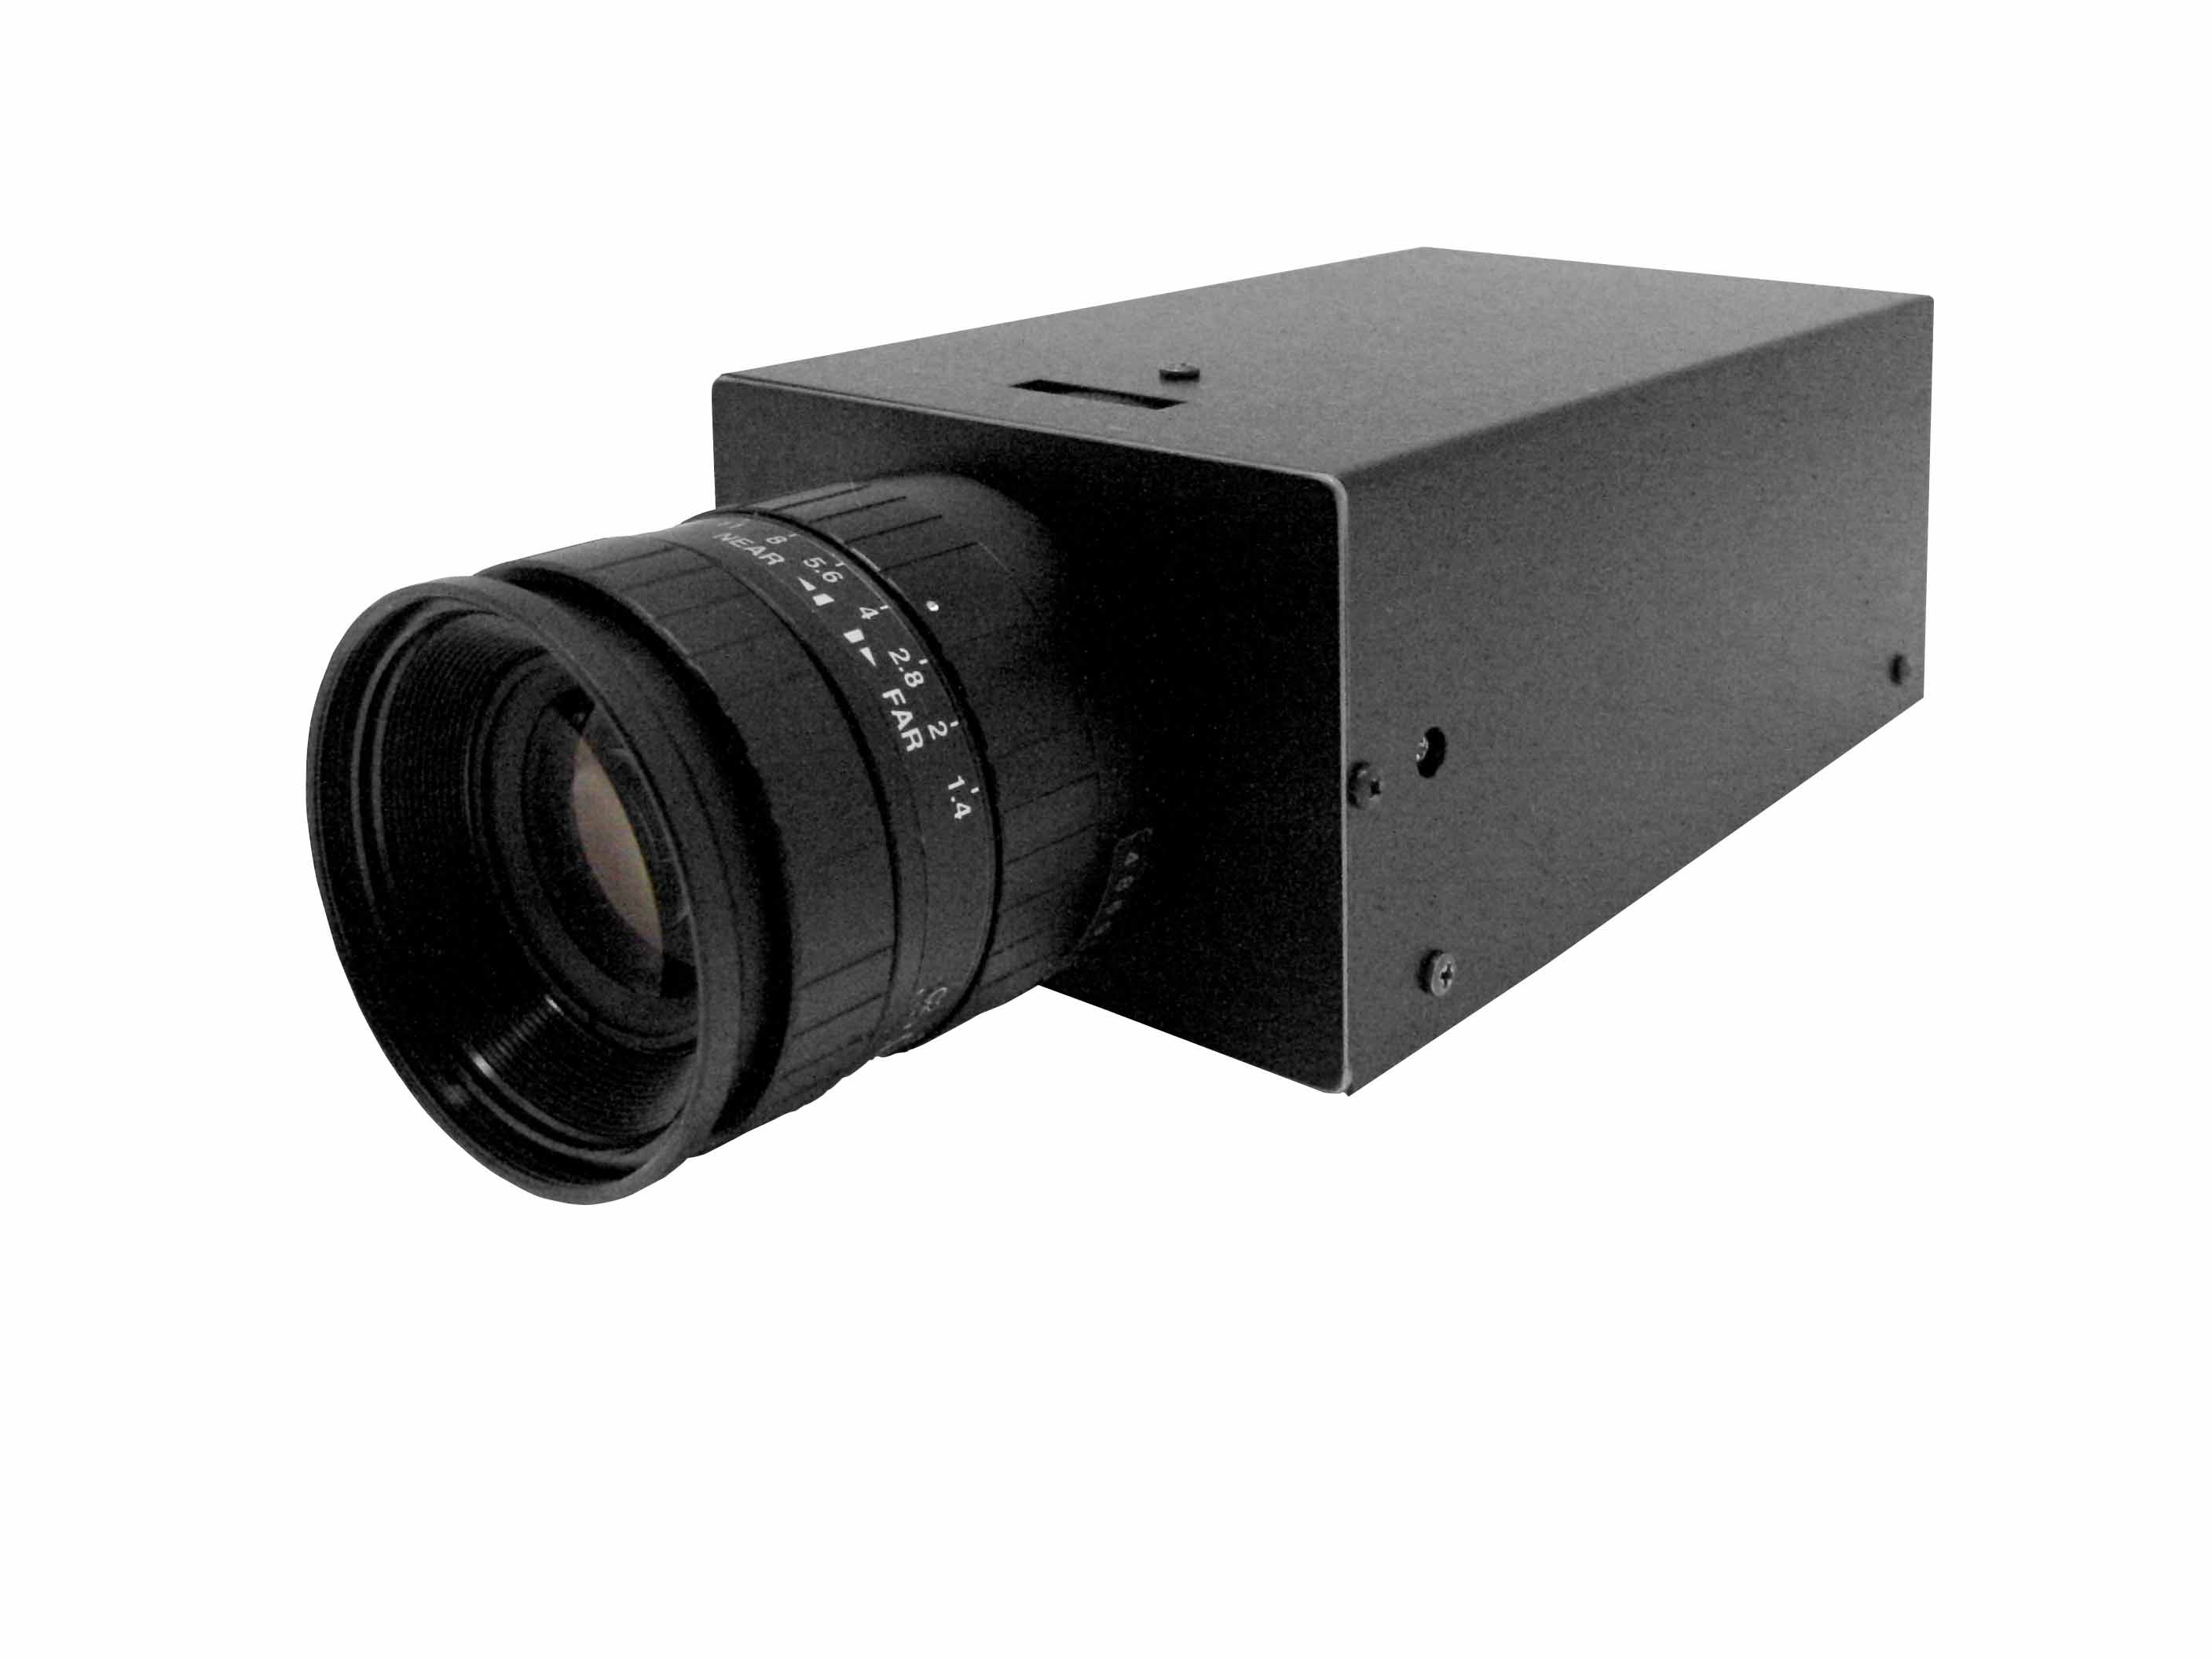 超高感度HDビデオカメラシステム「SSC-9600」